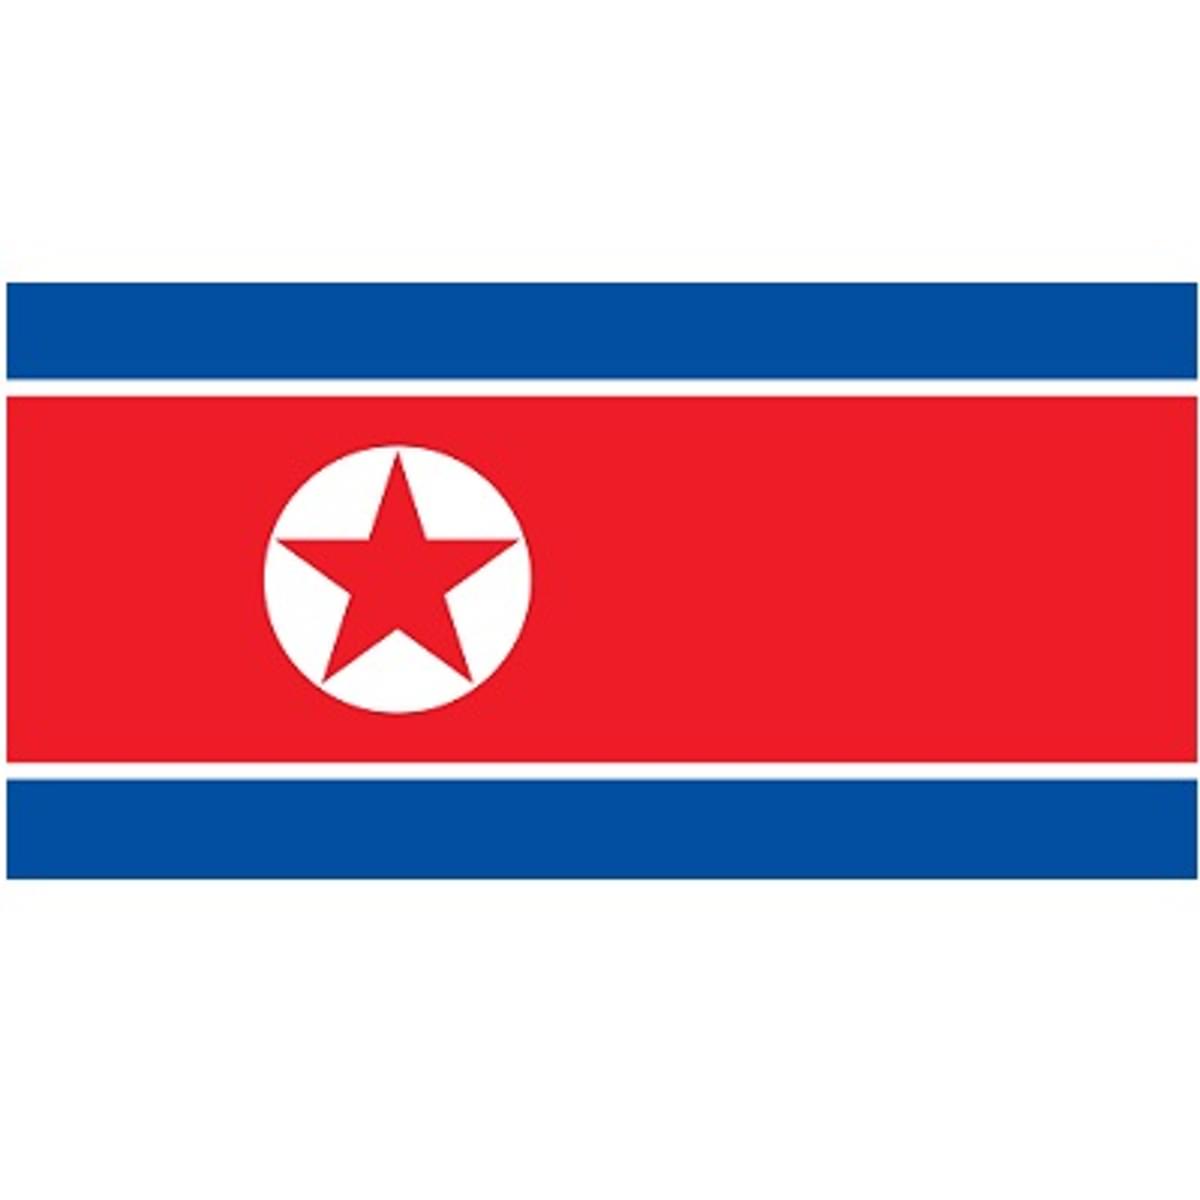 Noord-Koreaanse hackers stelen miljarden aan cryptocurrency image